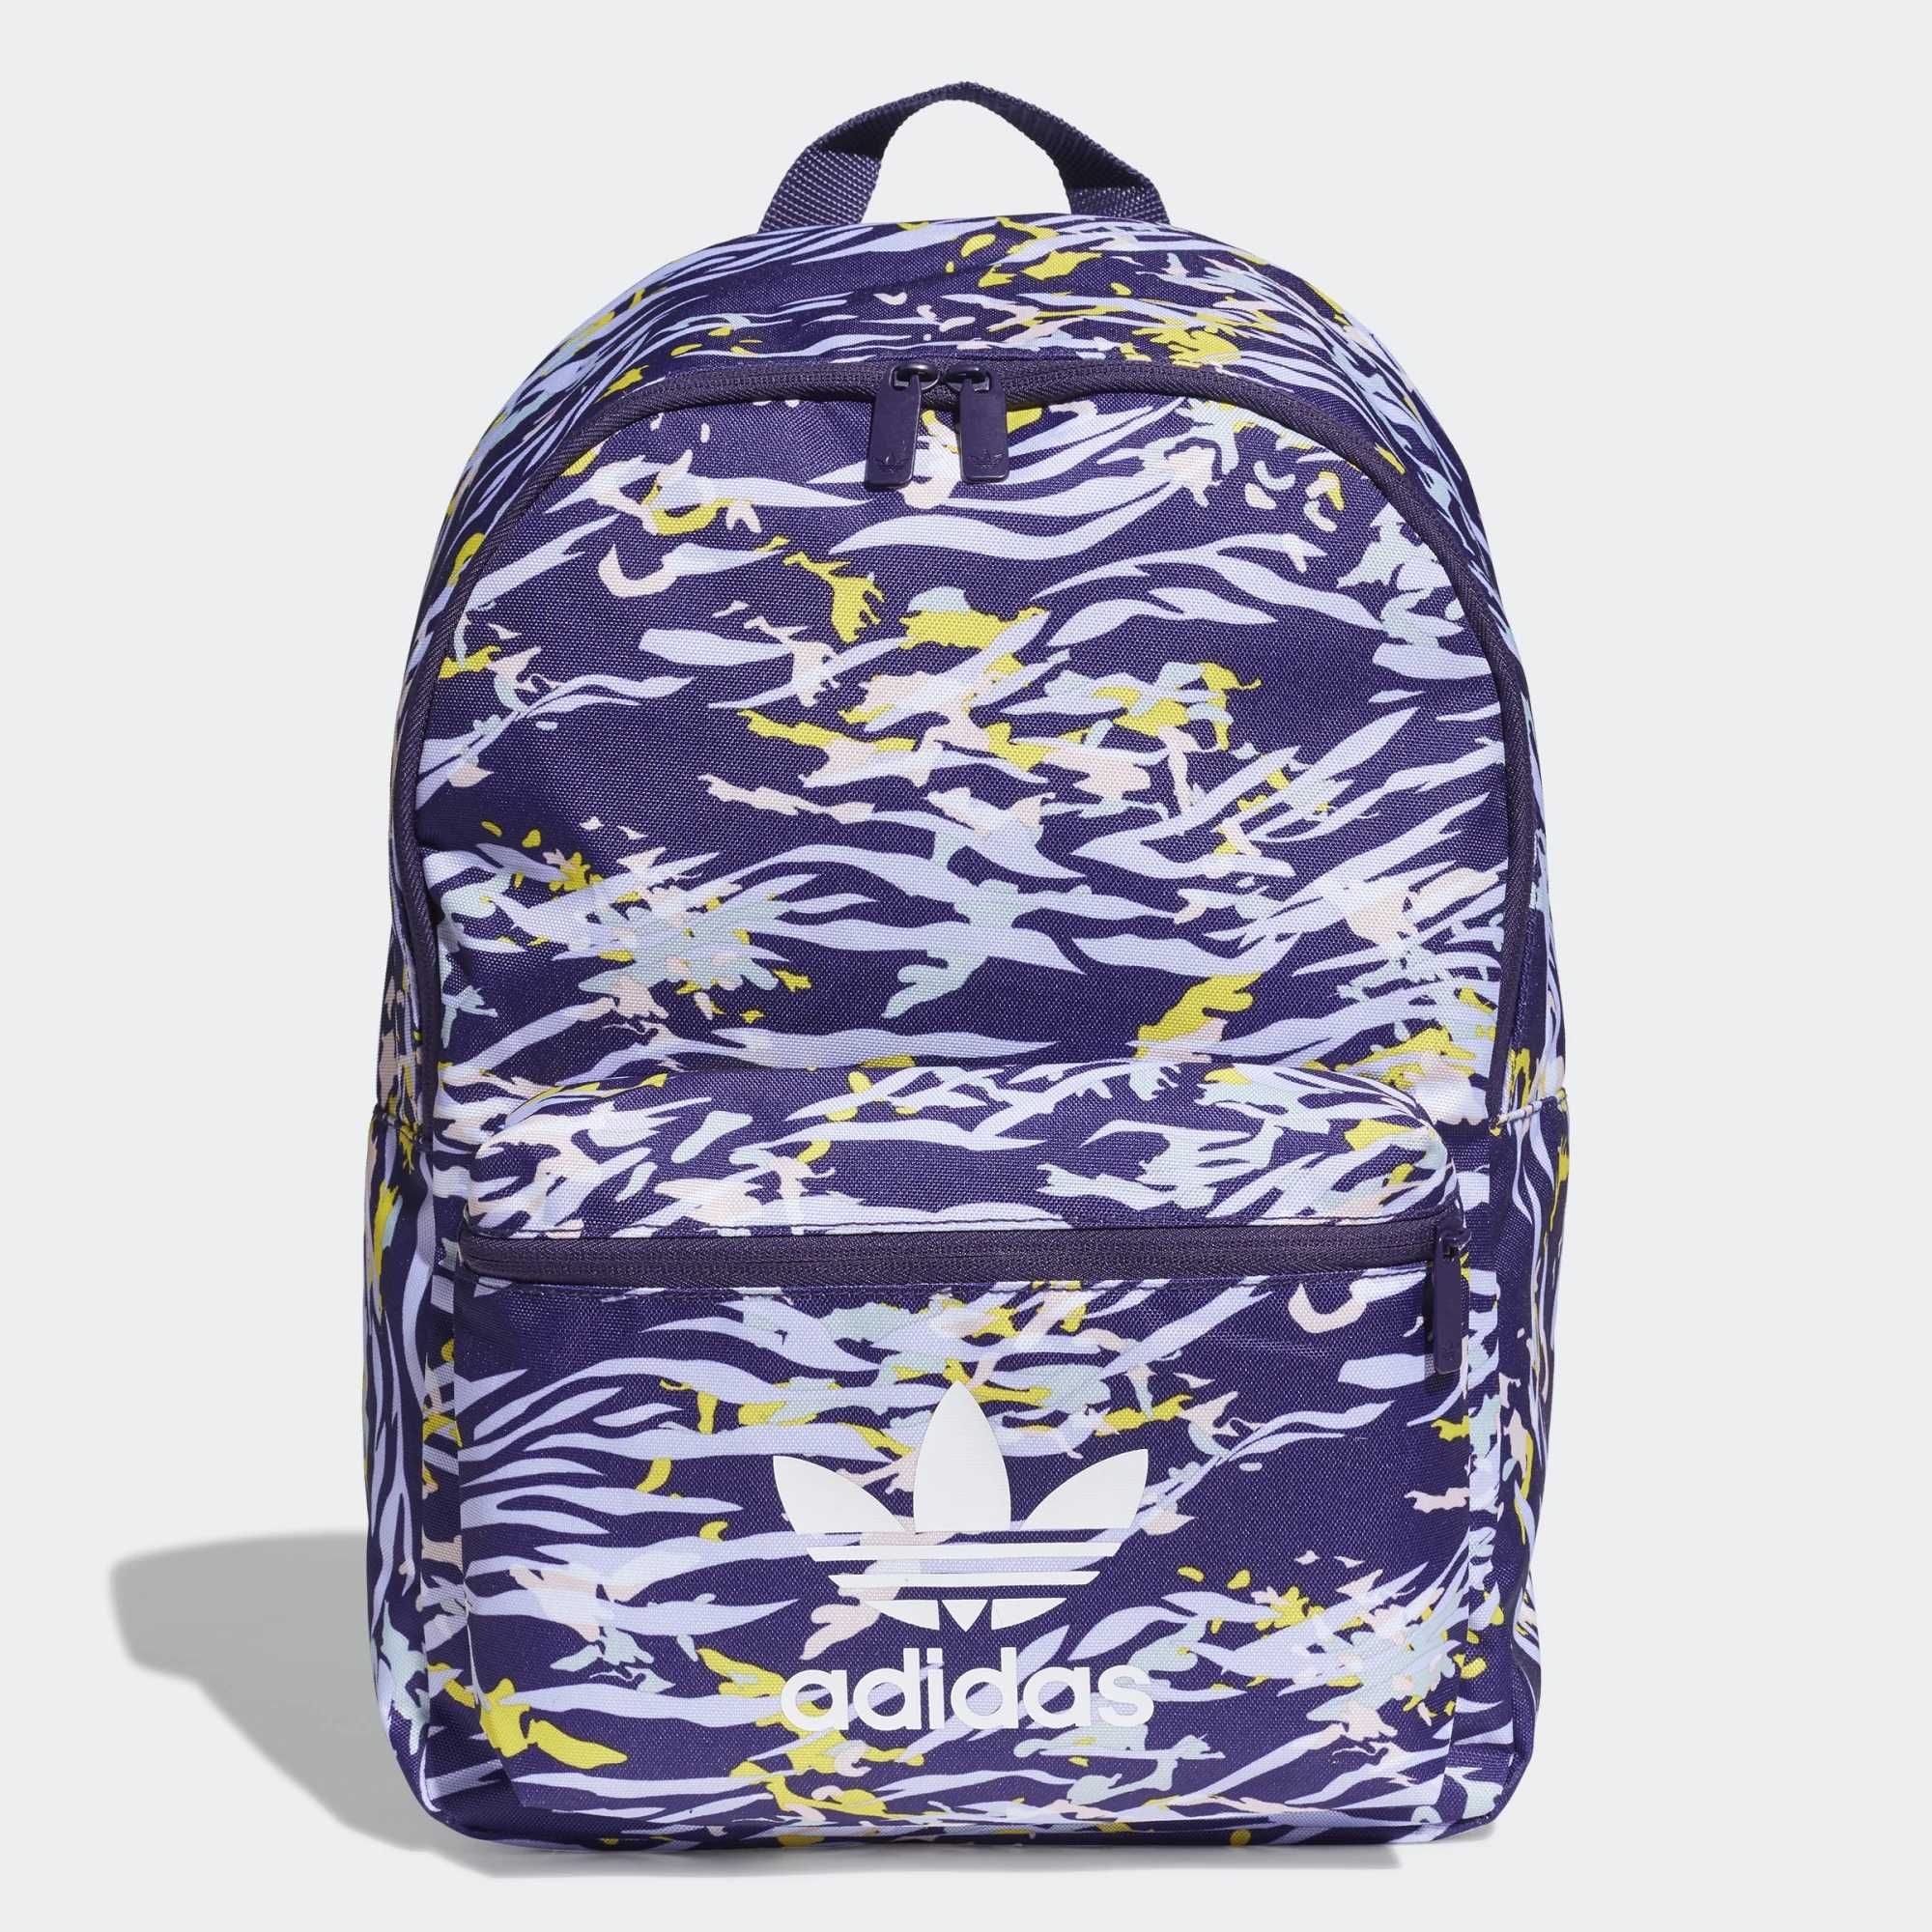 NOWY Plecak Adidas Originals fioletowy unisex sportowy sklep 139zł !